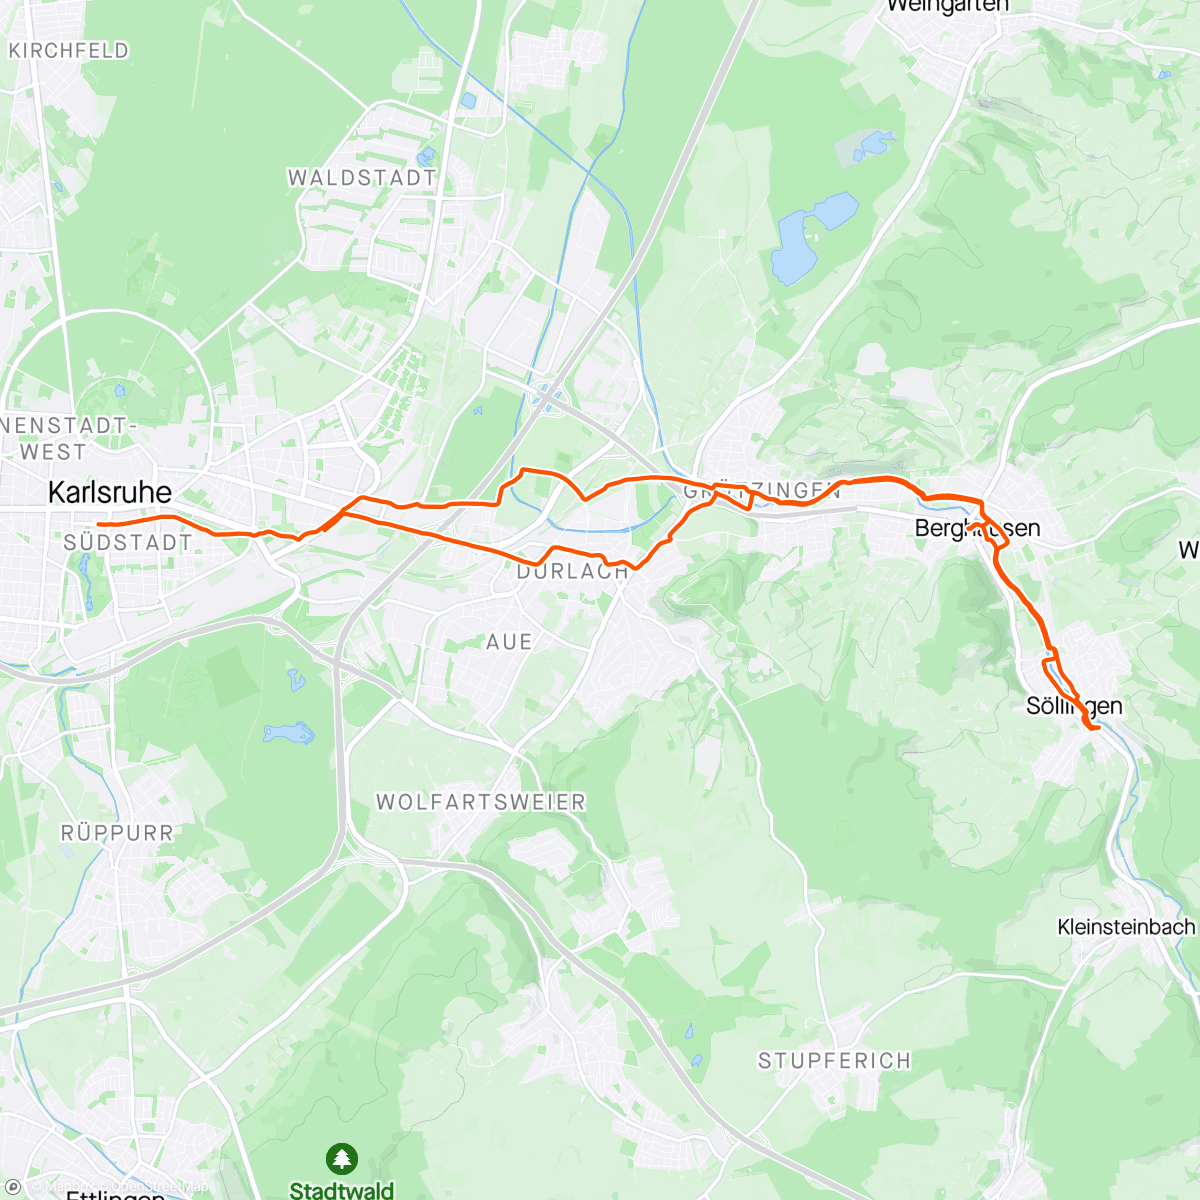 「Käffchen und Spaghetti -Eis」活動的地圖